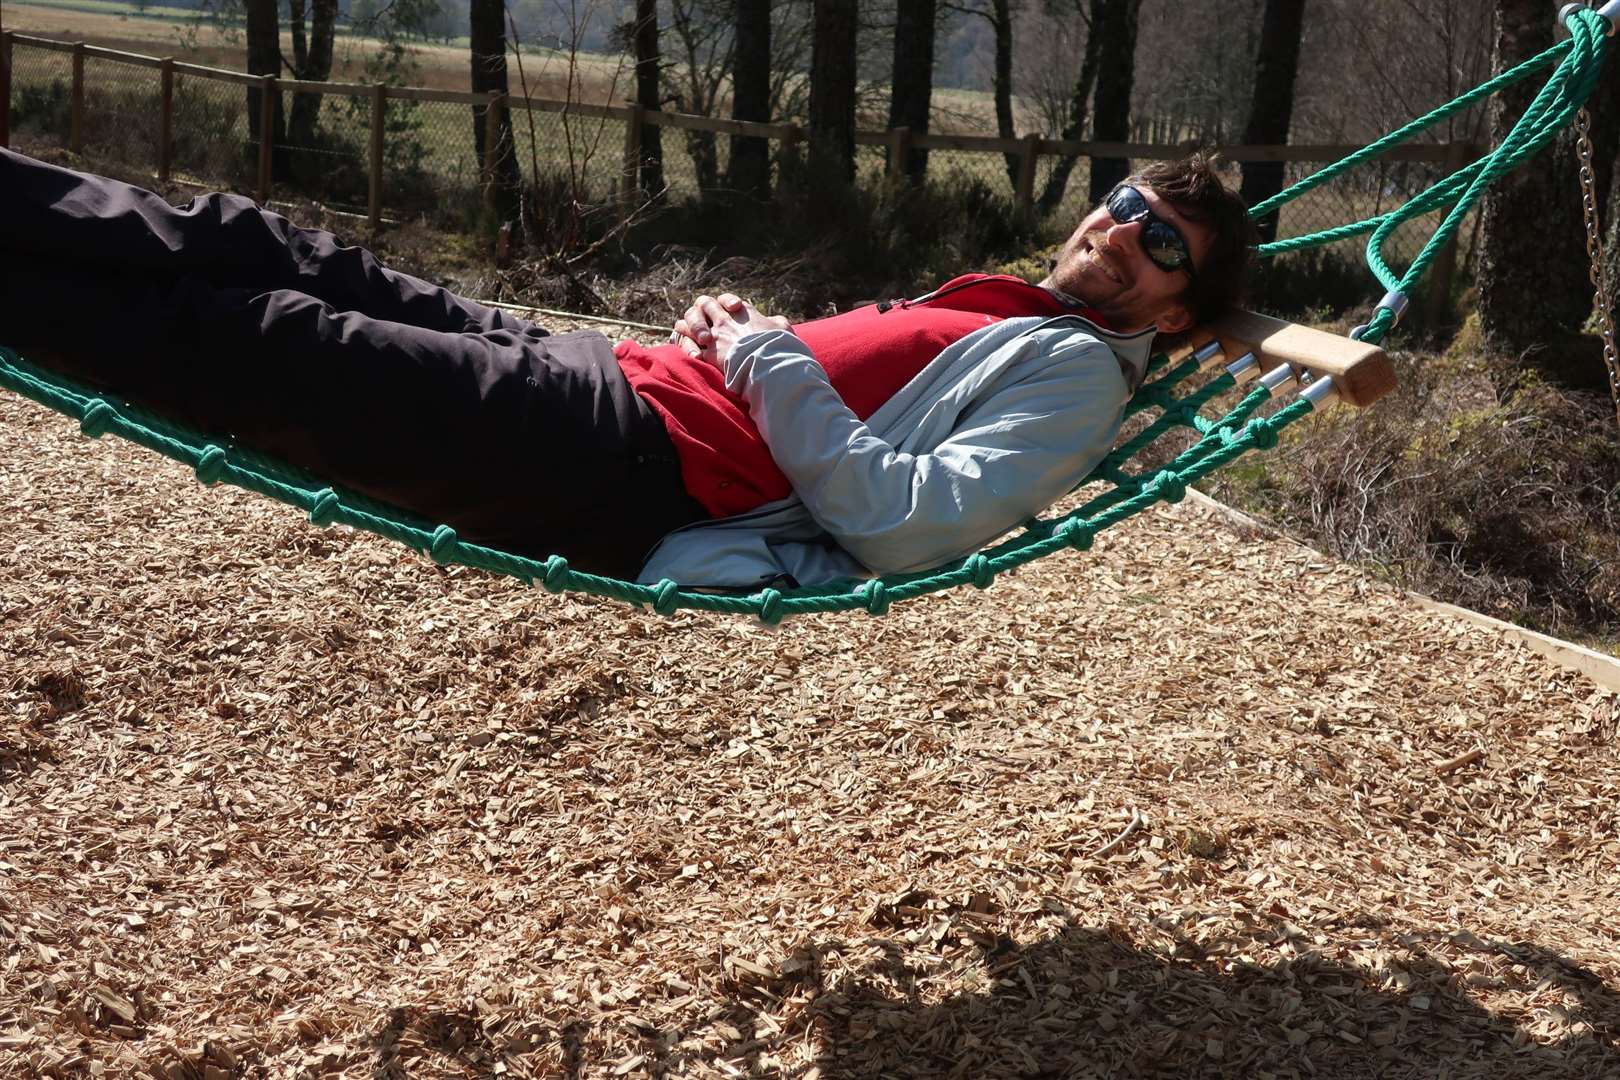 John takes a break on the hammock.